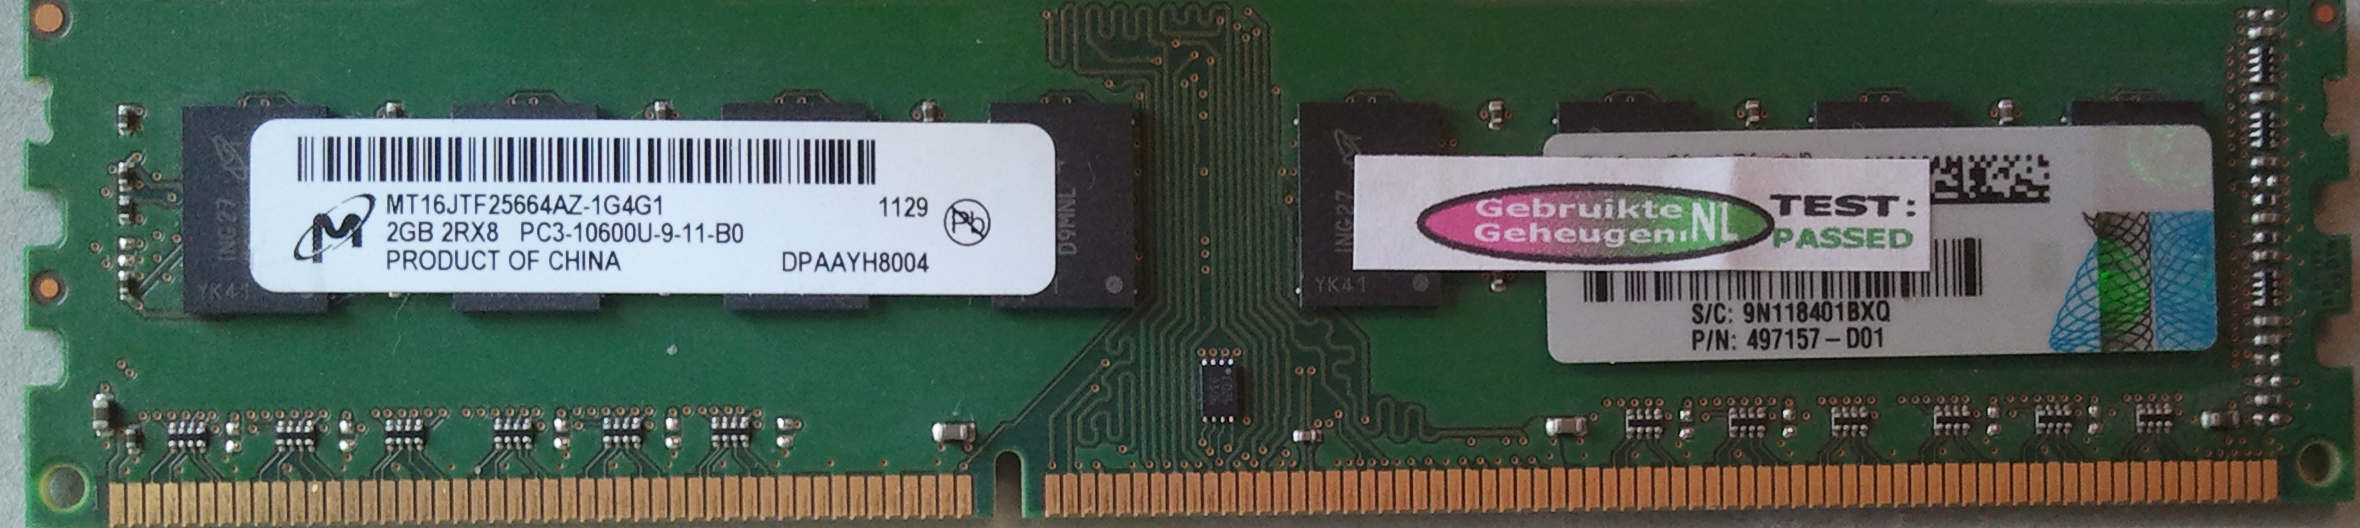 2GB 2Rx8 PC3-10600U-9-11-B0